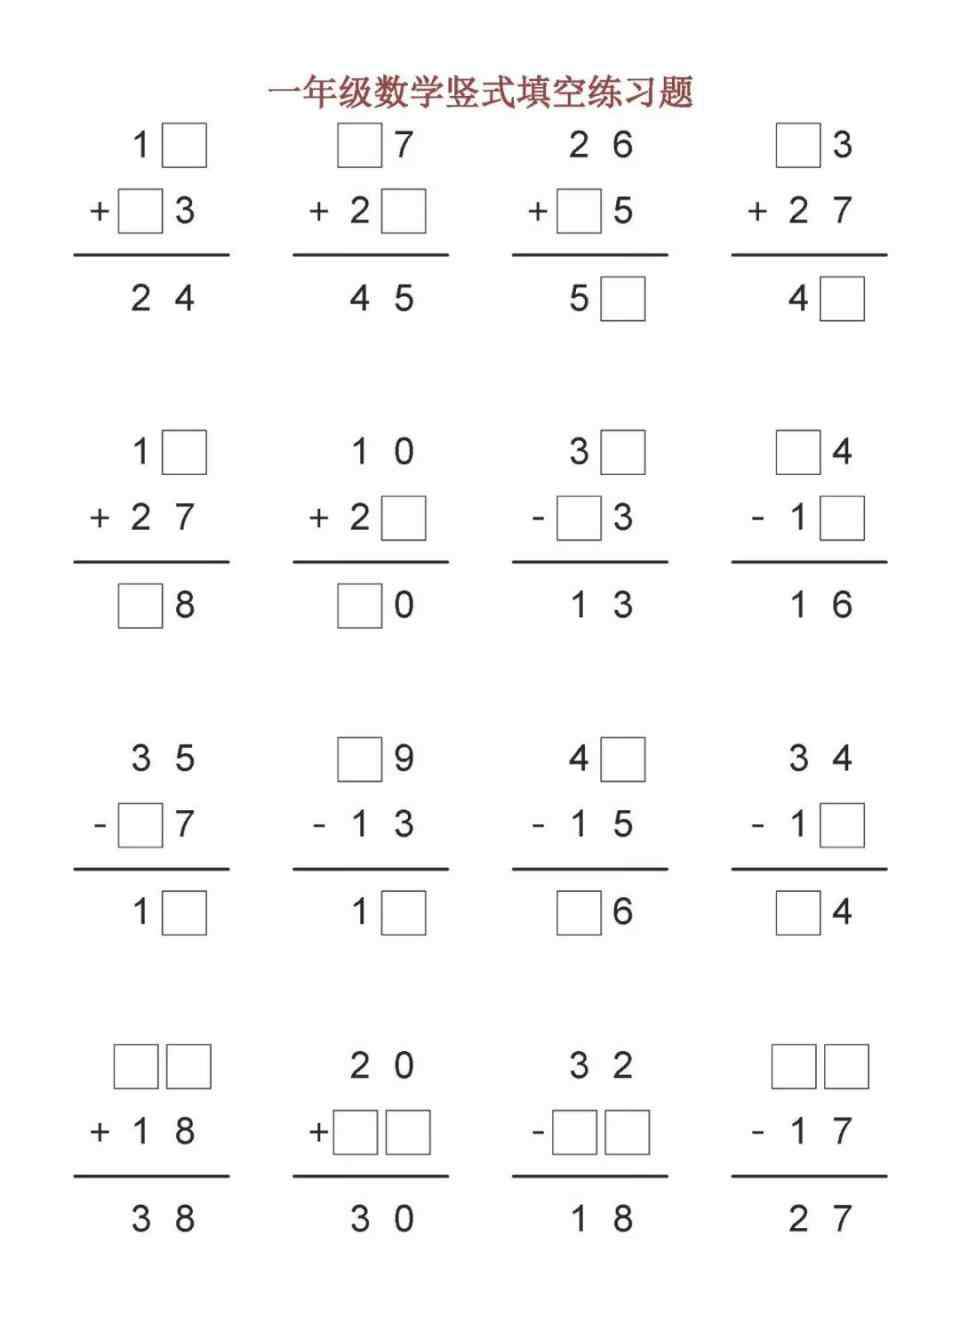 数学填空题 小学一年级数学竖式填空练习题打印版，下载给孩子练习！